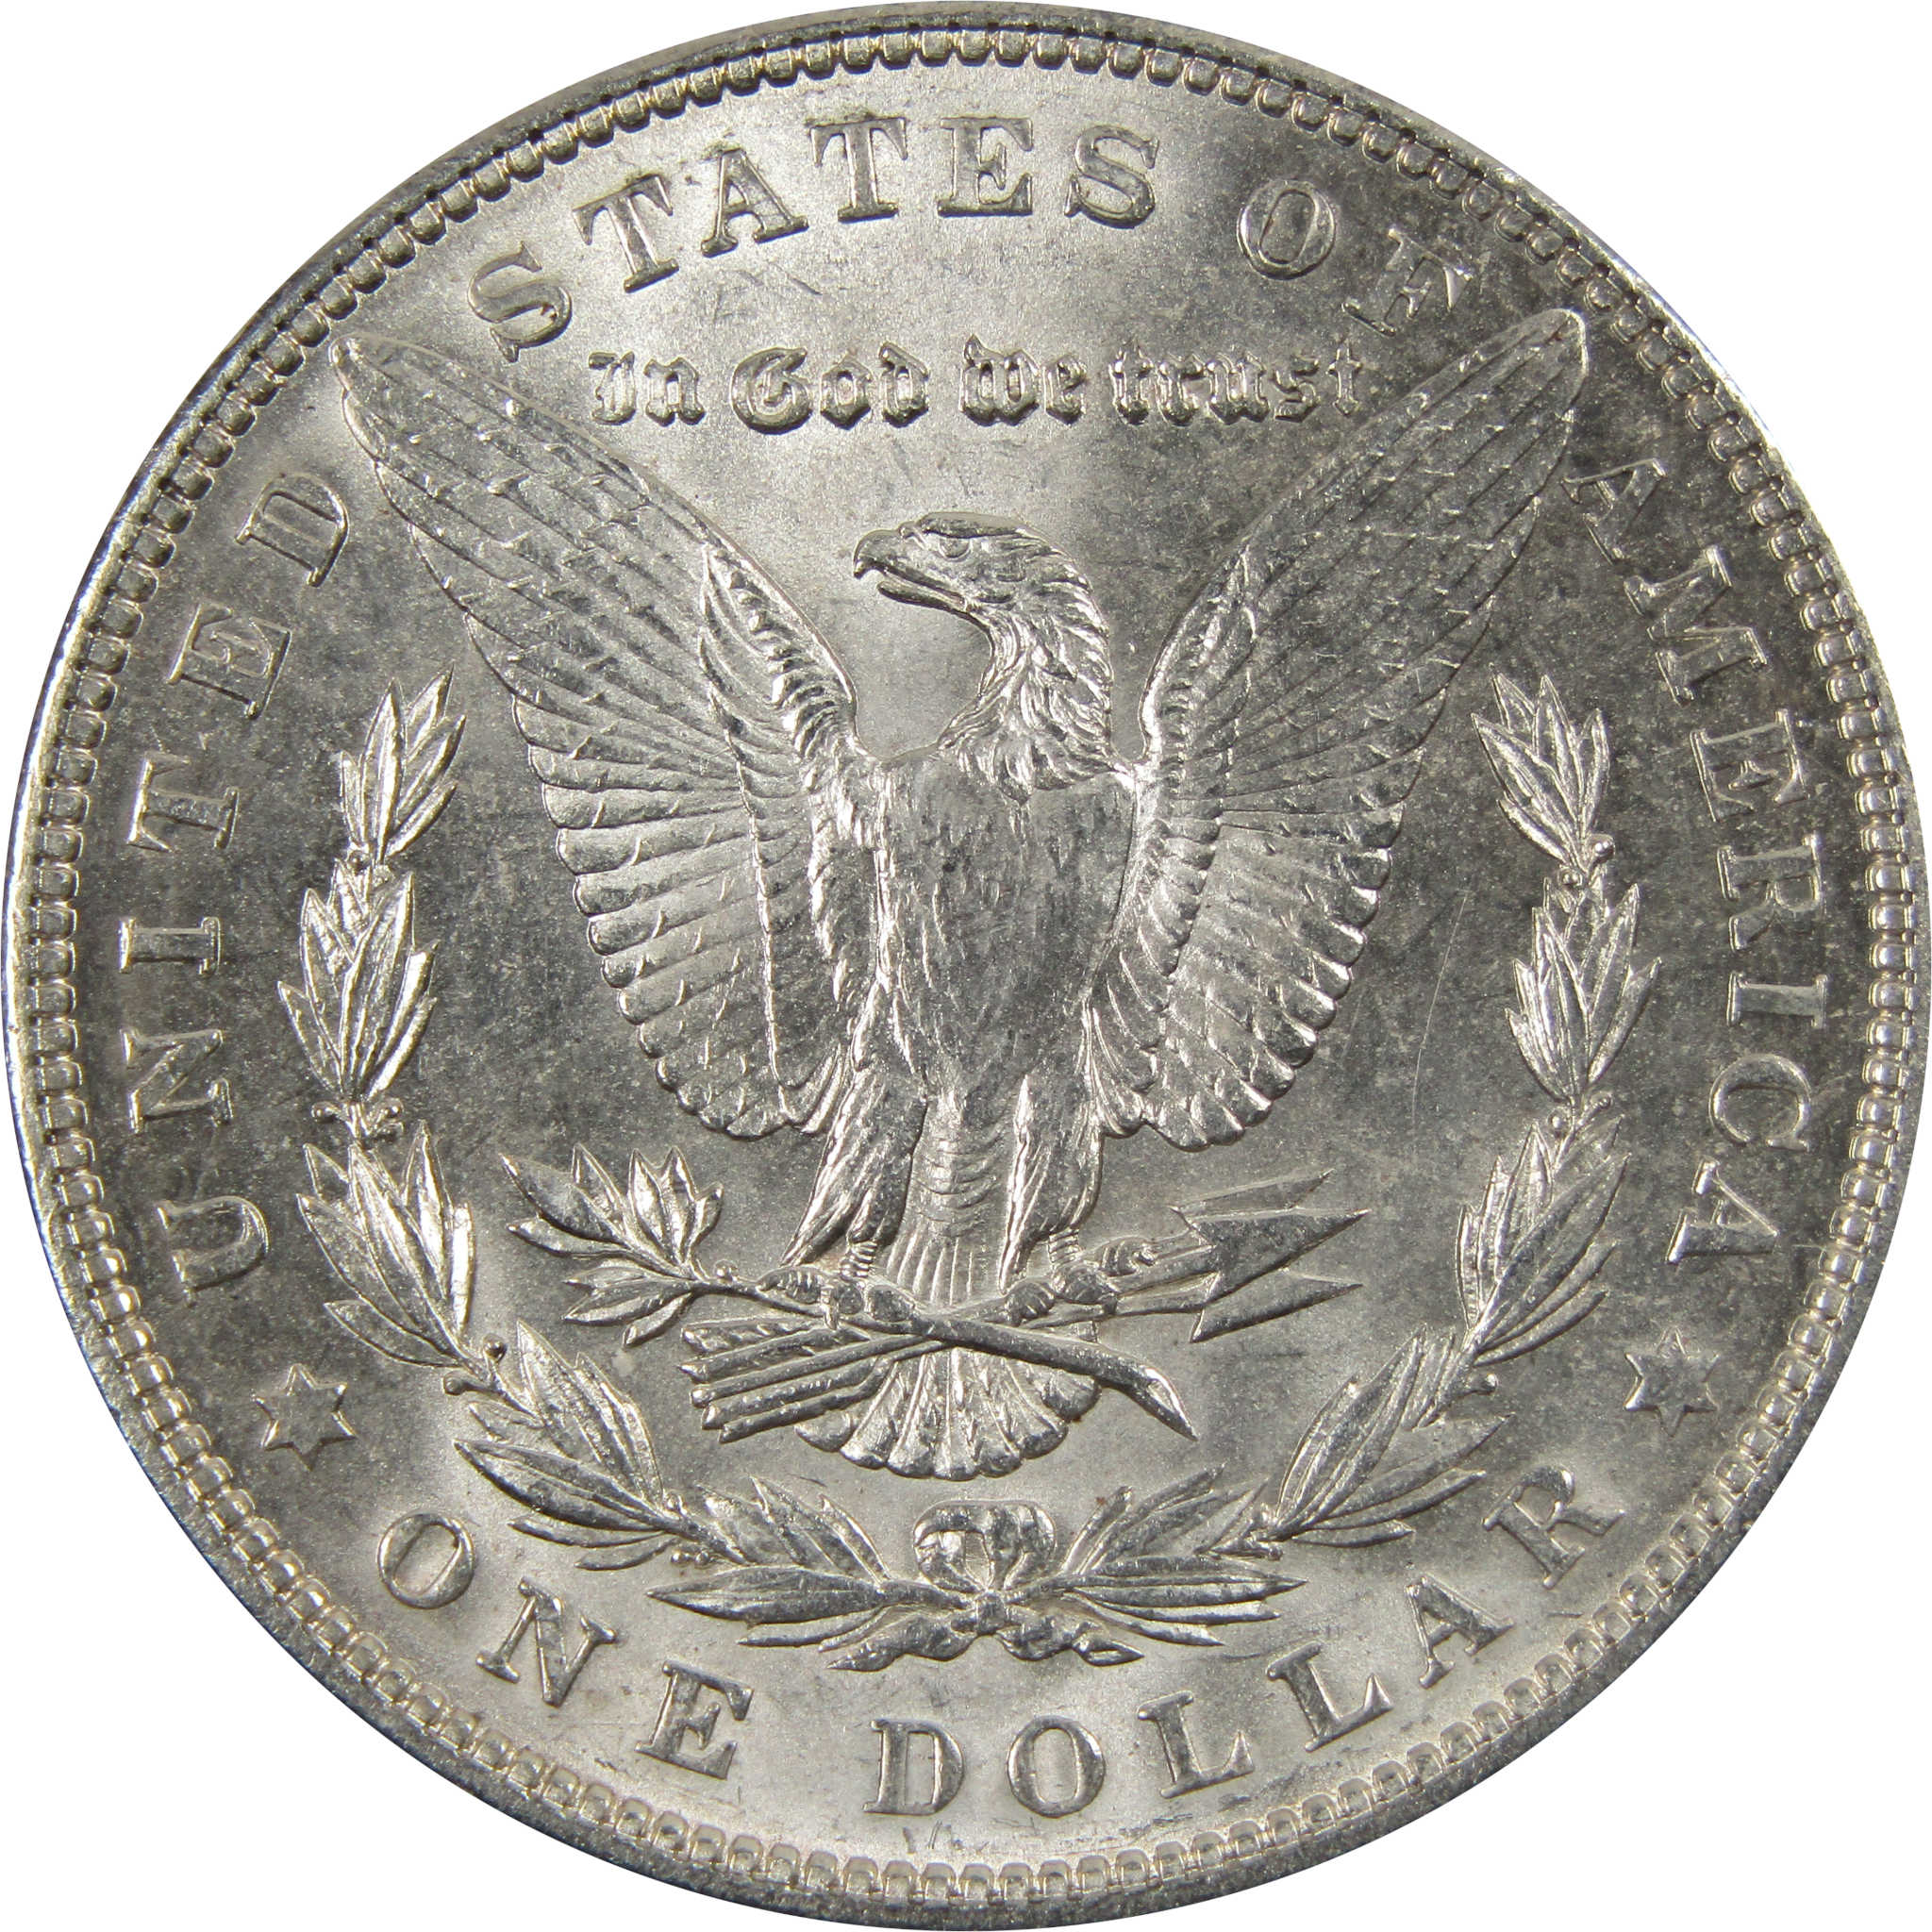 1903 Morgan Dollar BU Uncirculated 90% Silver $1 Coin SKU:I7306 - Morgan coin - Morgan silver dollar - Morgan silver dollar for sale - Profile Coins &amp; Collectibles